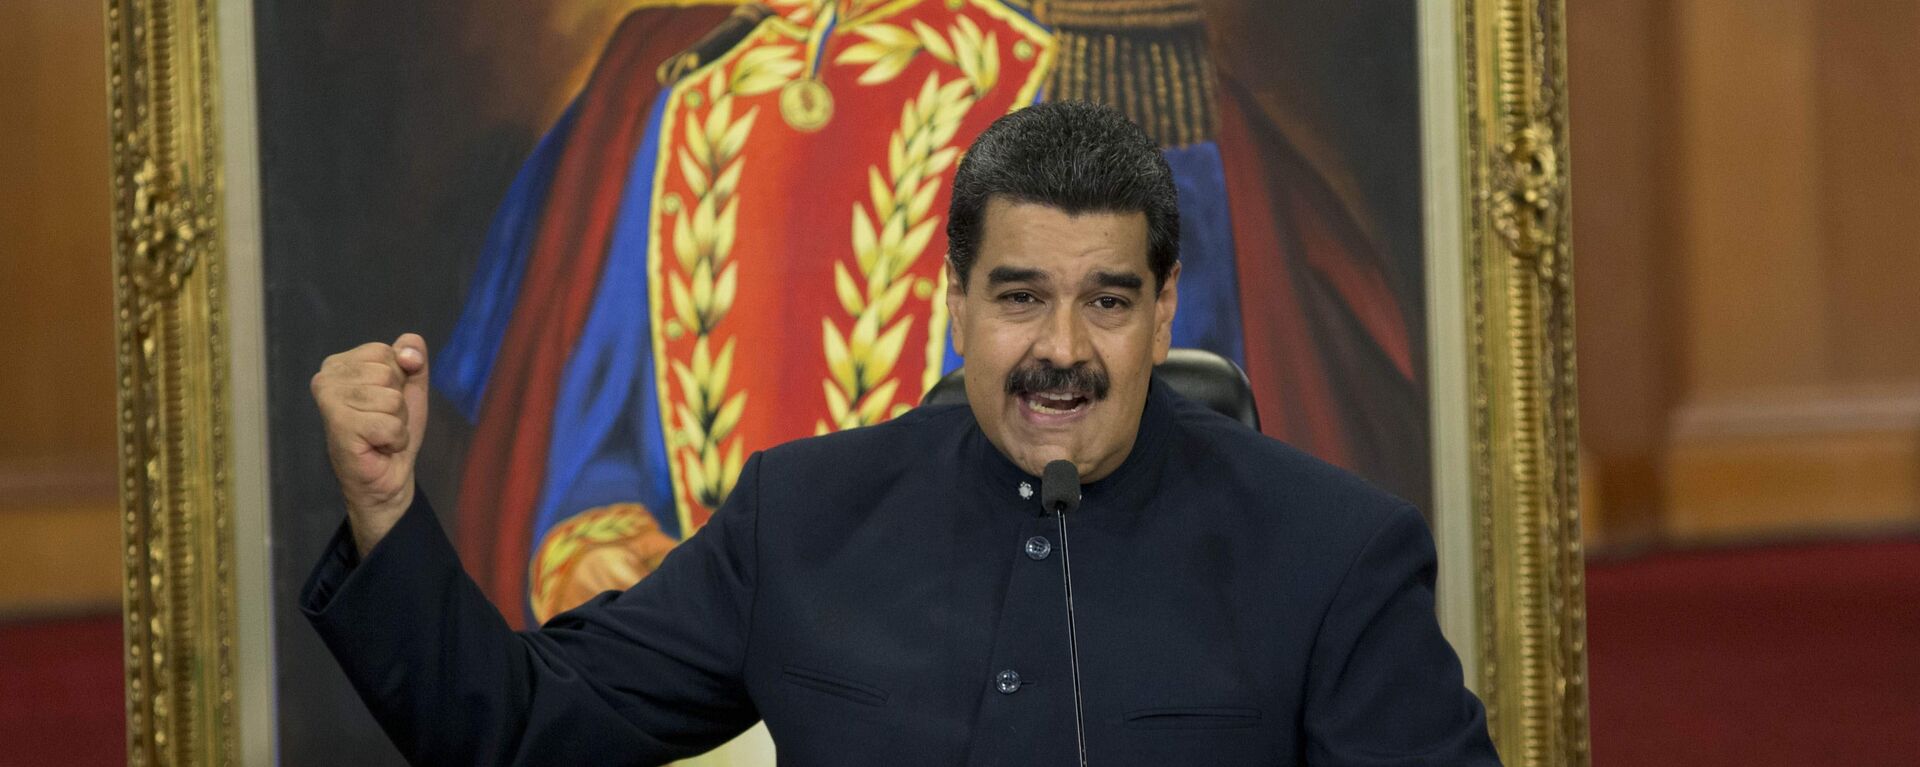 Nicolás Maduro, presidente de Venezuela - Sputnik Mundo, 1920, 20.10.2021